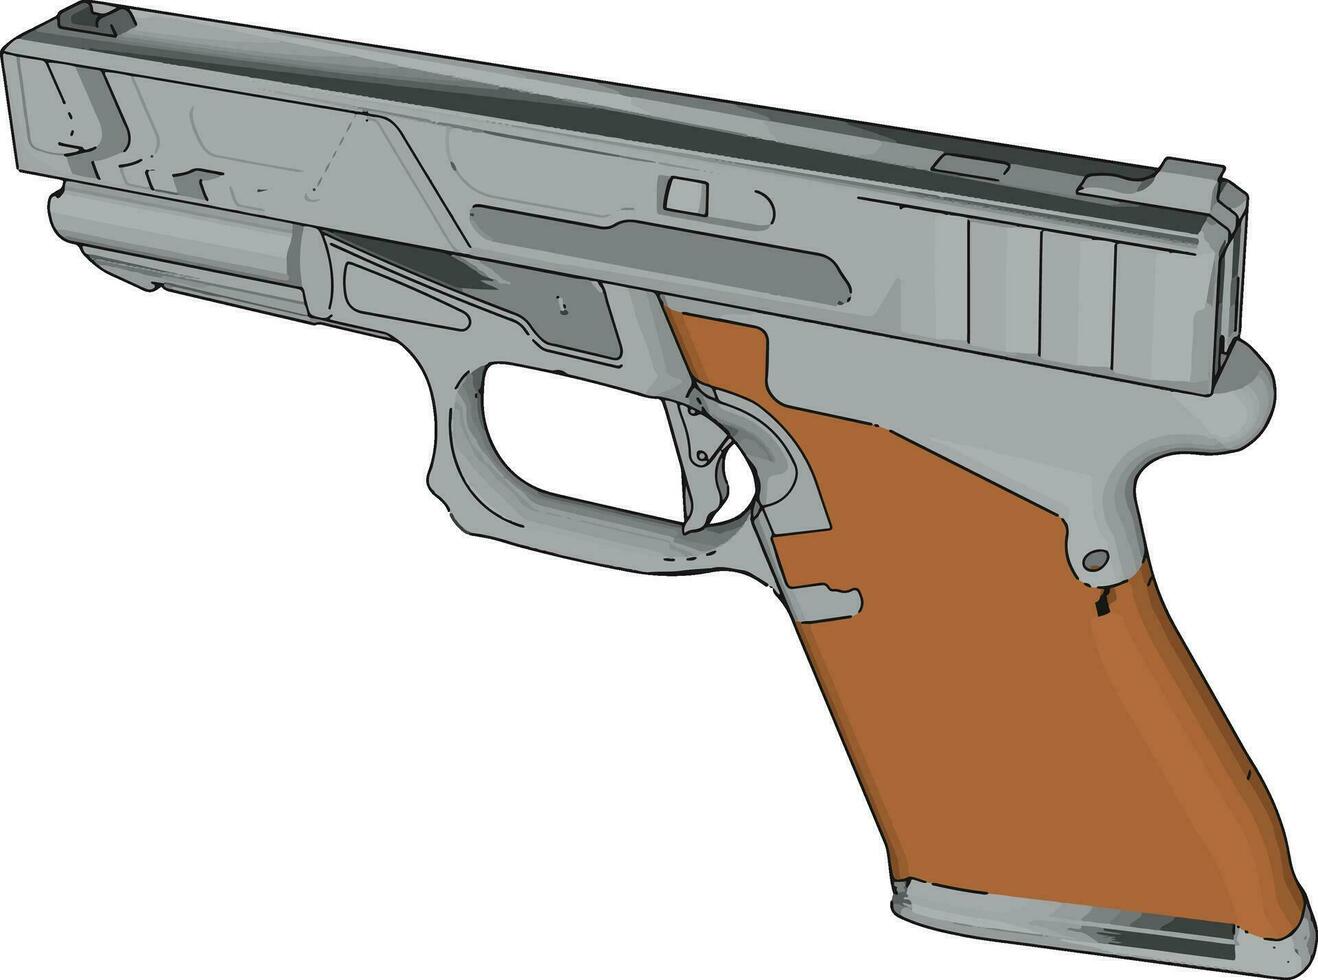 Handgun model, illustration, vector on white background.